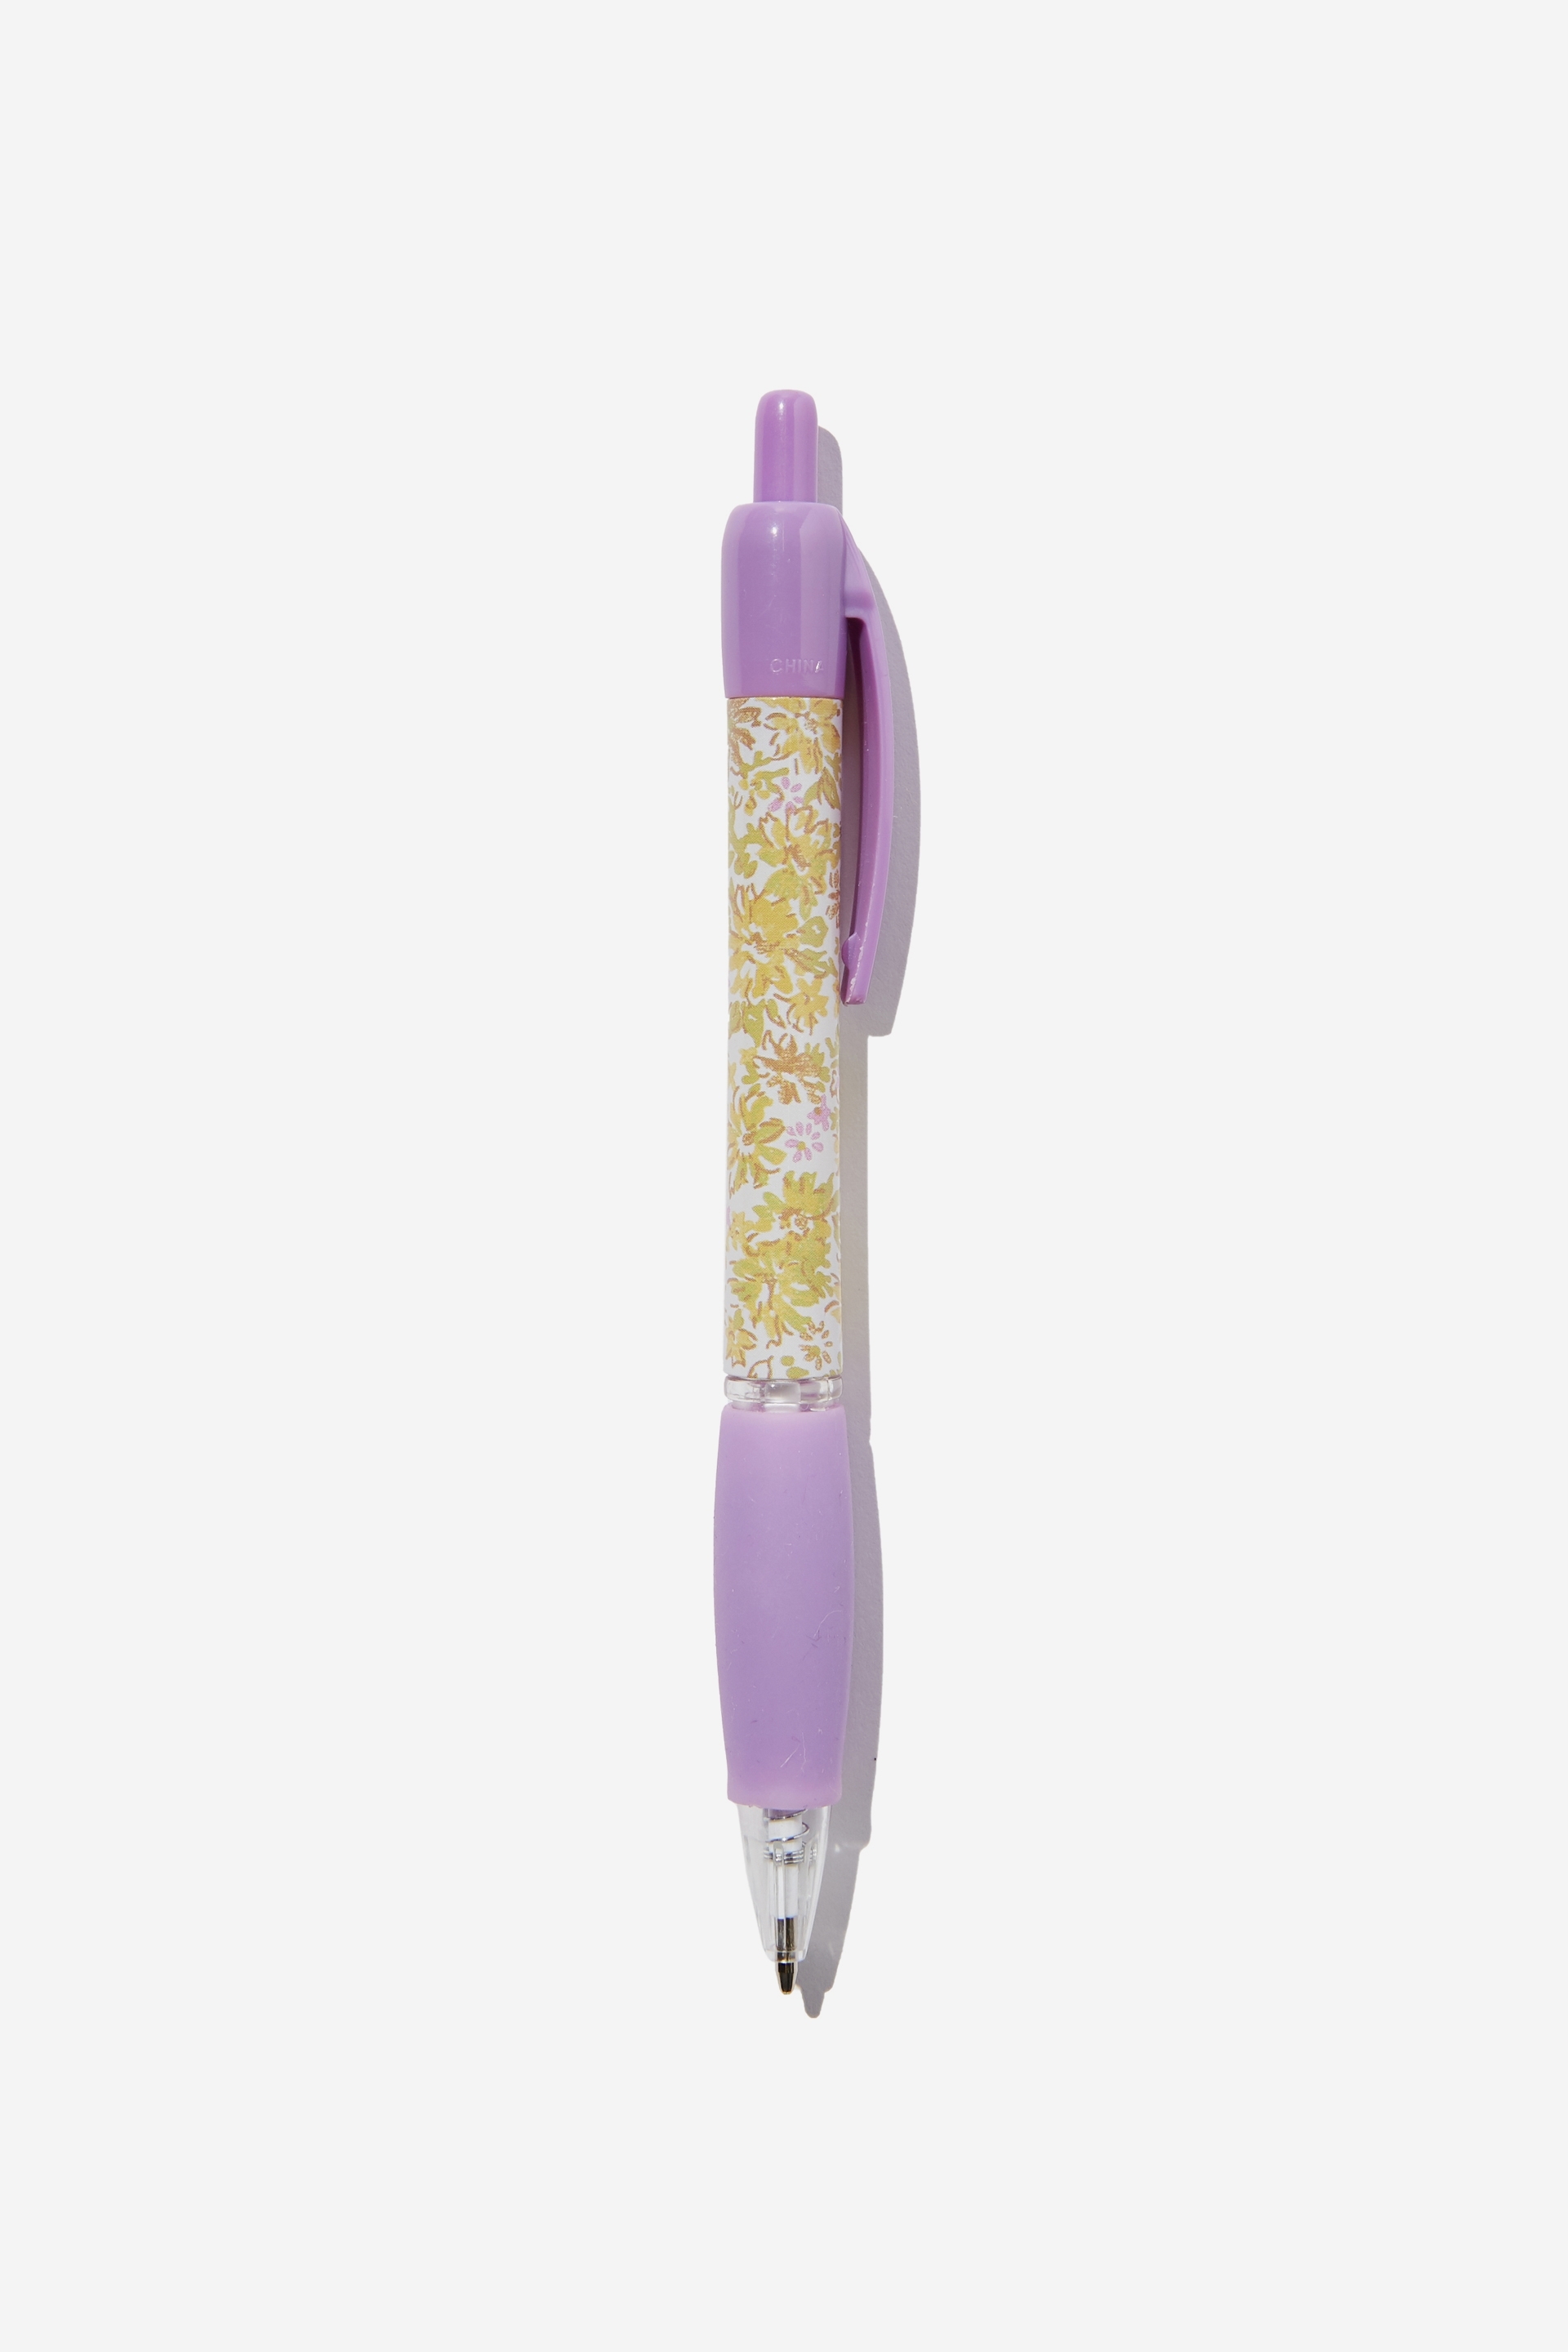 Typo - Spinout Pen - Suzie floral